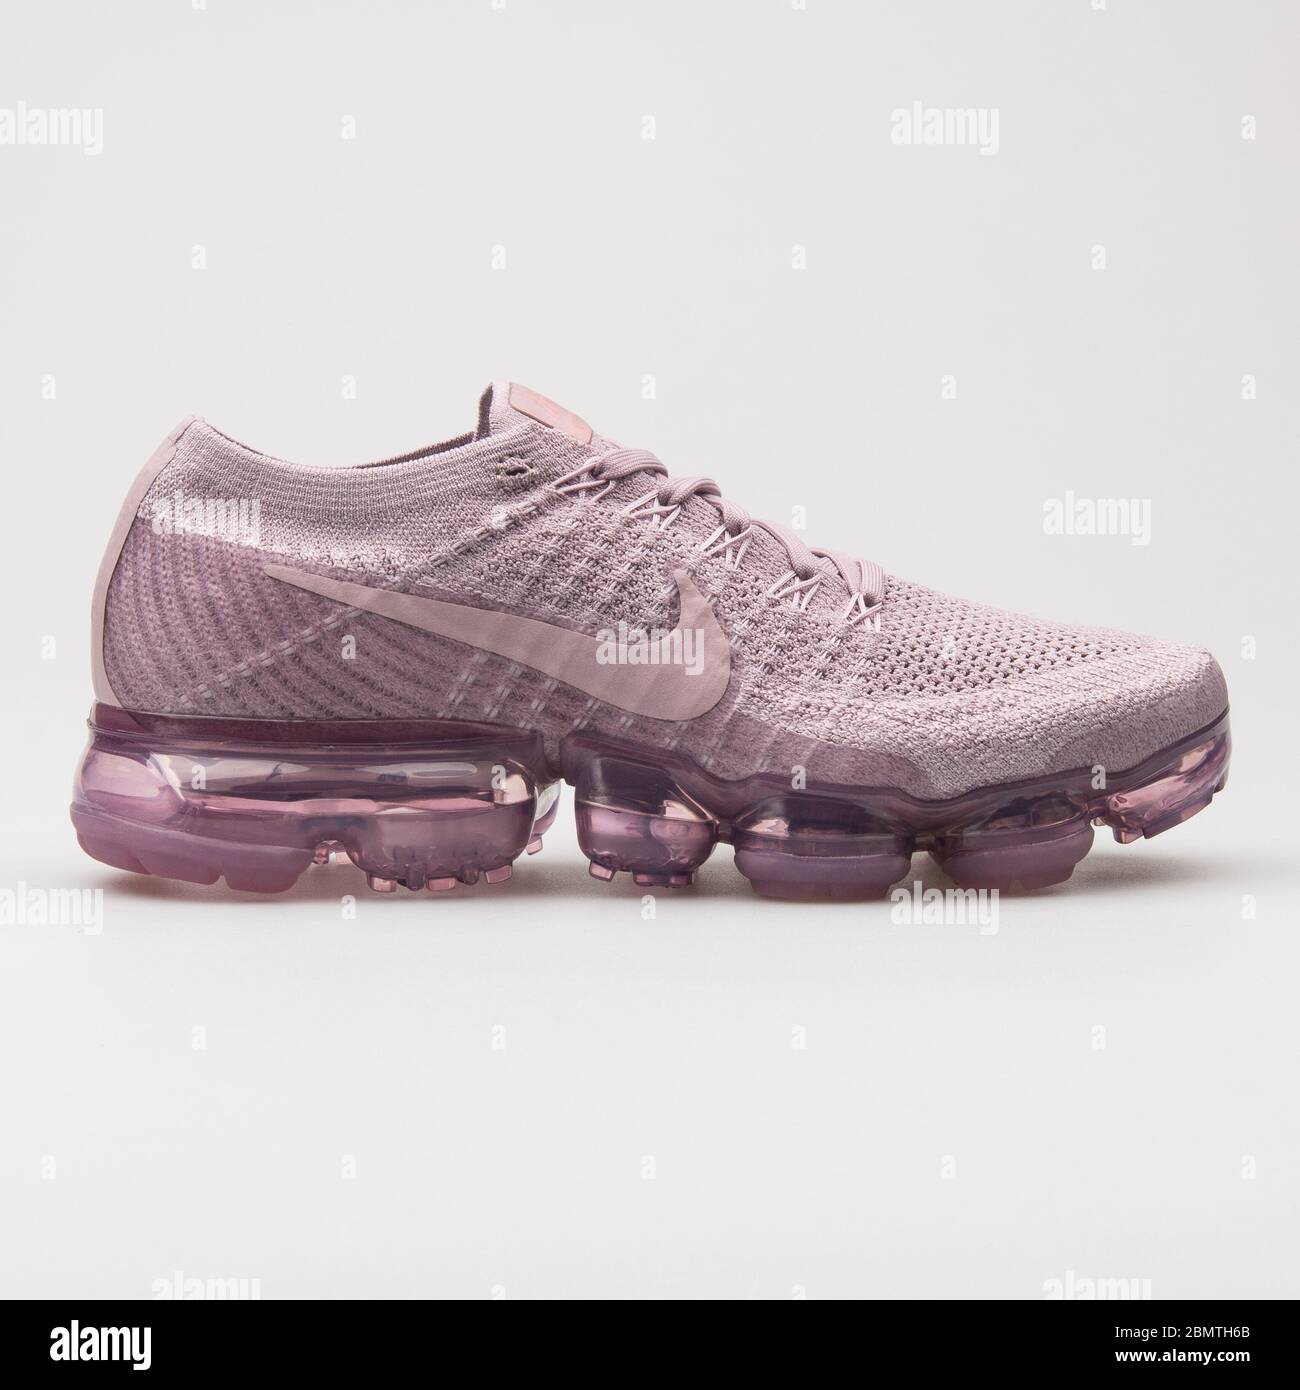 VIENA, - 12 DE ENERO 2018: Nike Air Vapormax Flyknit sneakers color púrpura sobre fondo blanco Fotografía de stock - Alamy